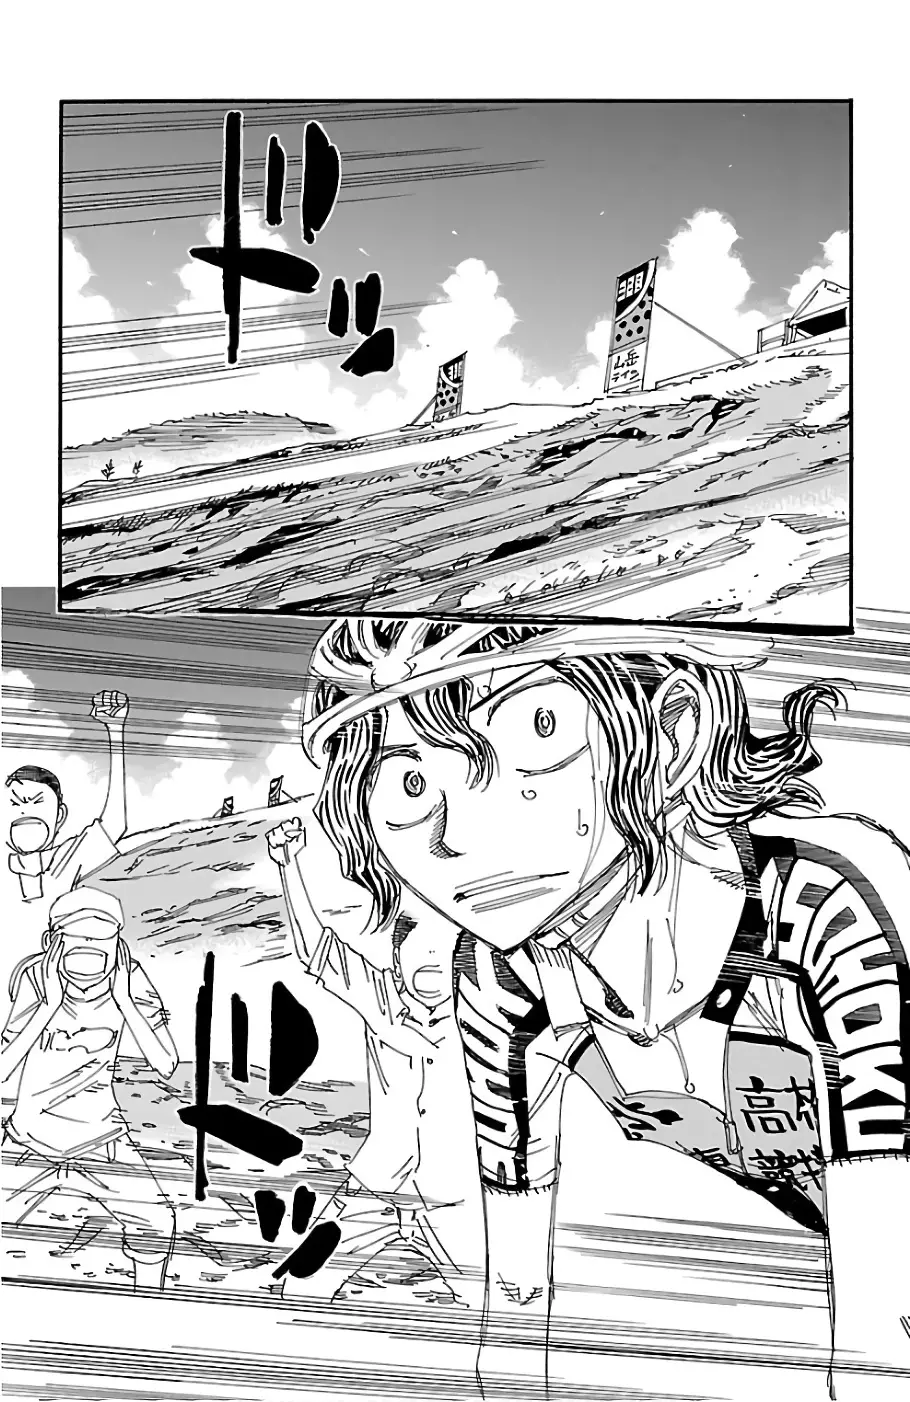 Yowamushi Pedal - 477 page 5-3f7bab0c